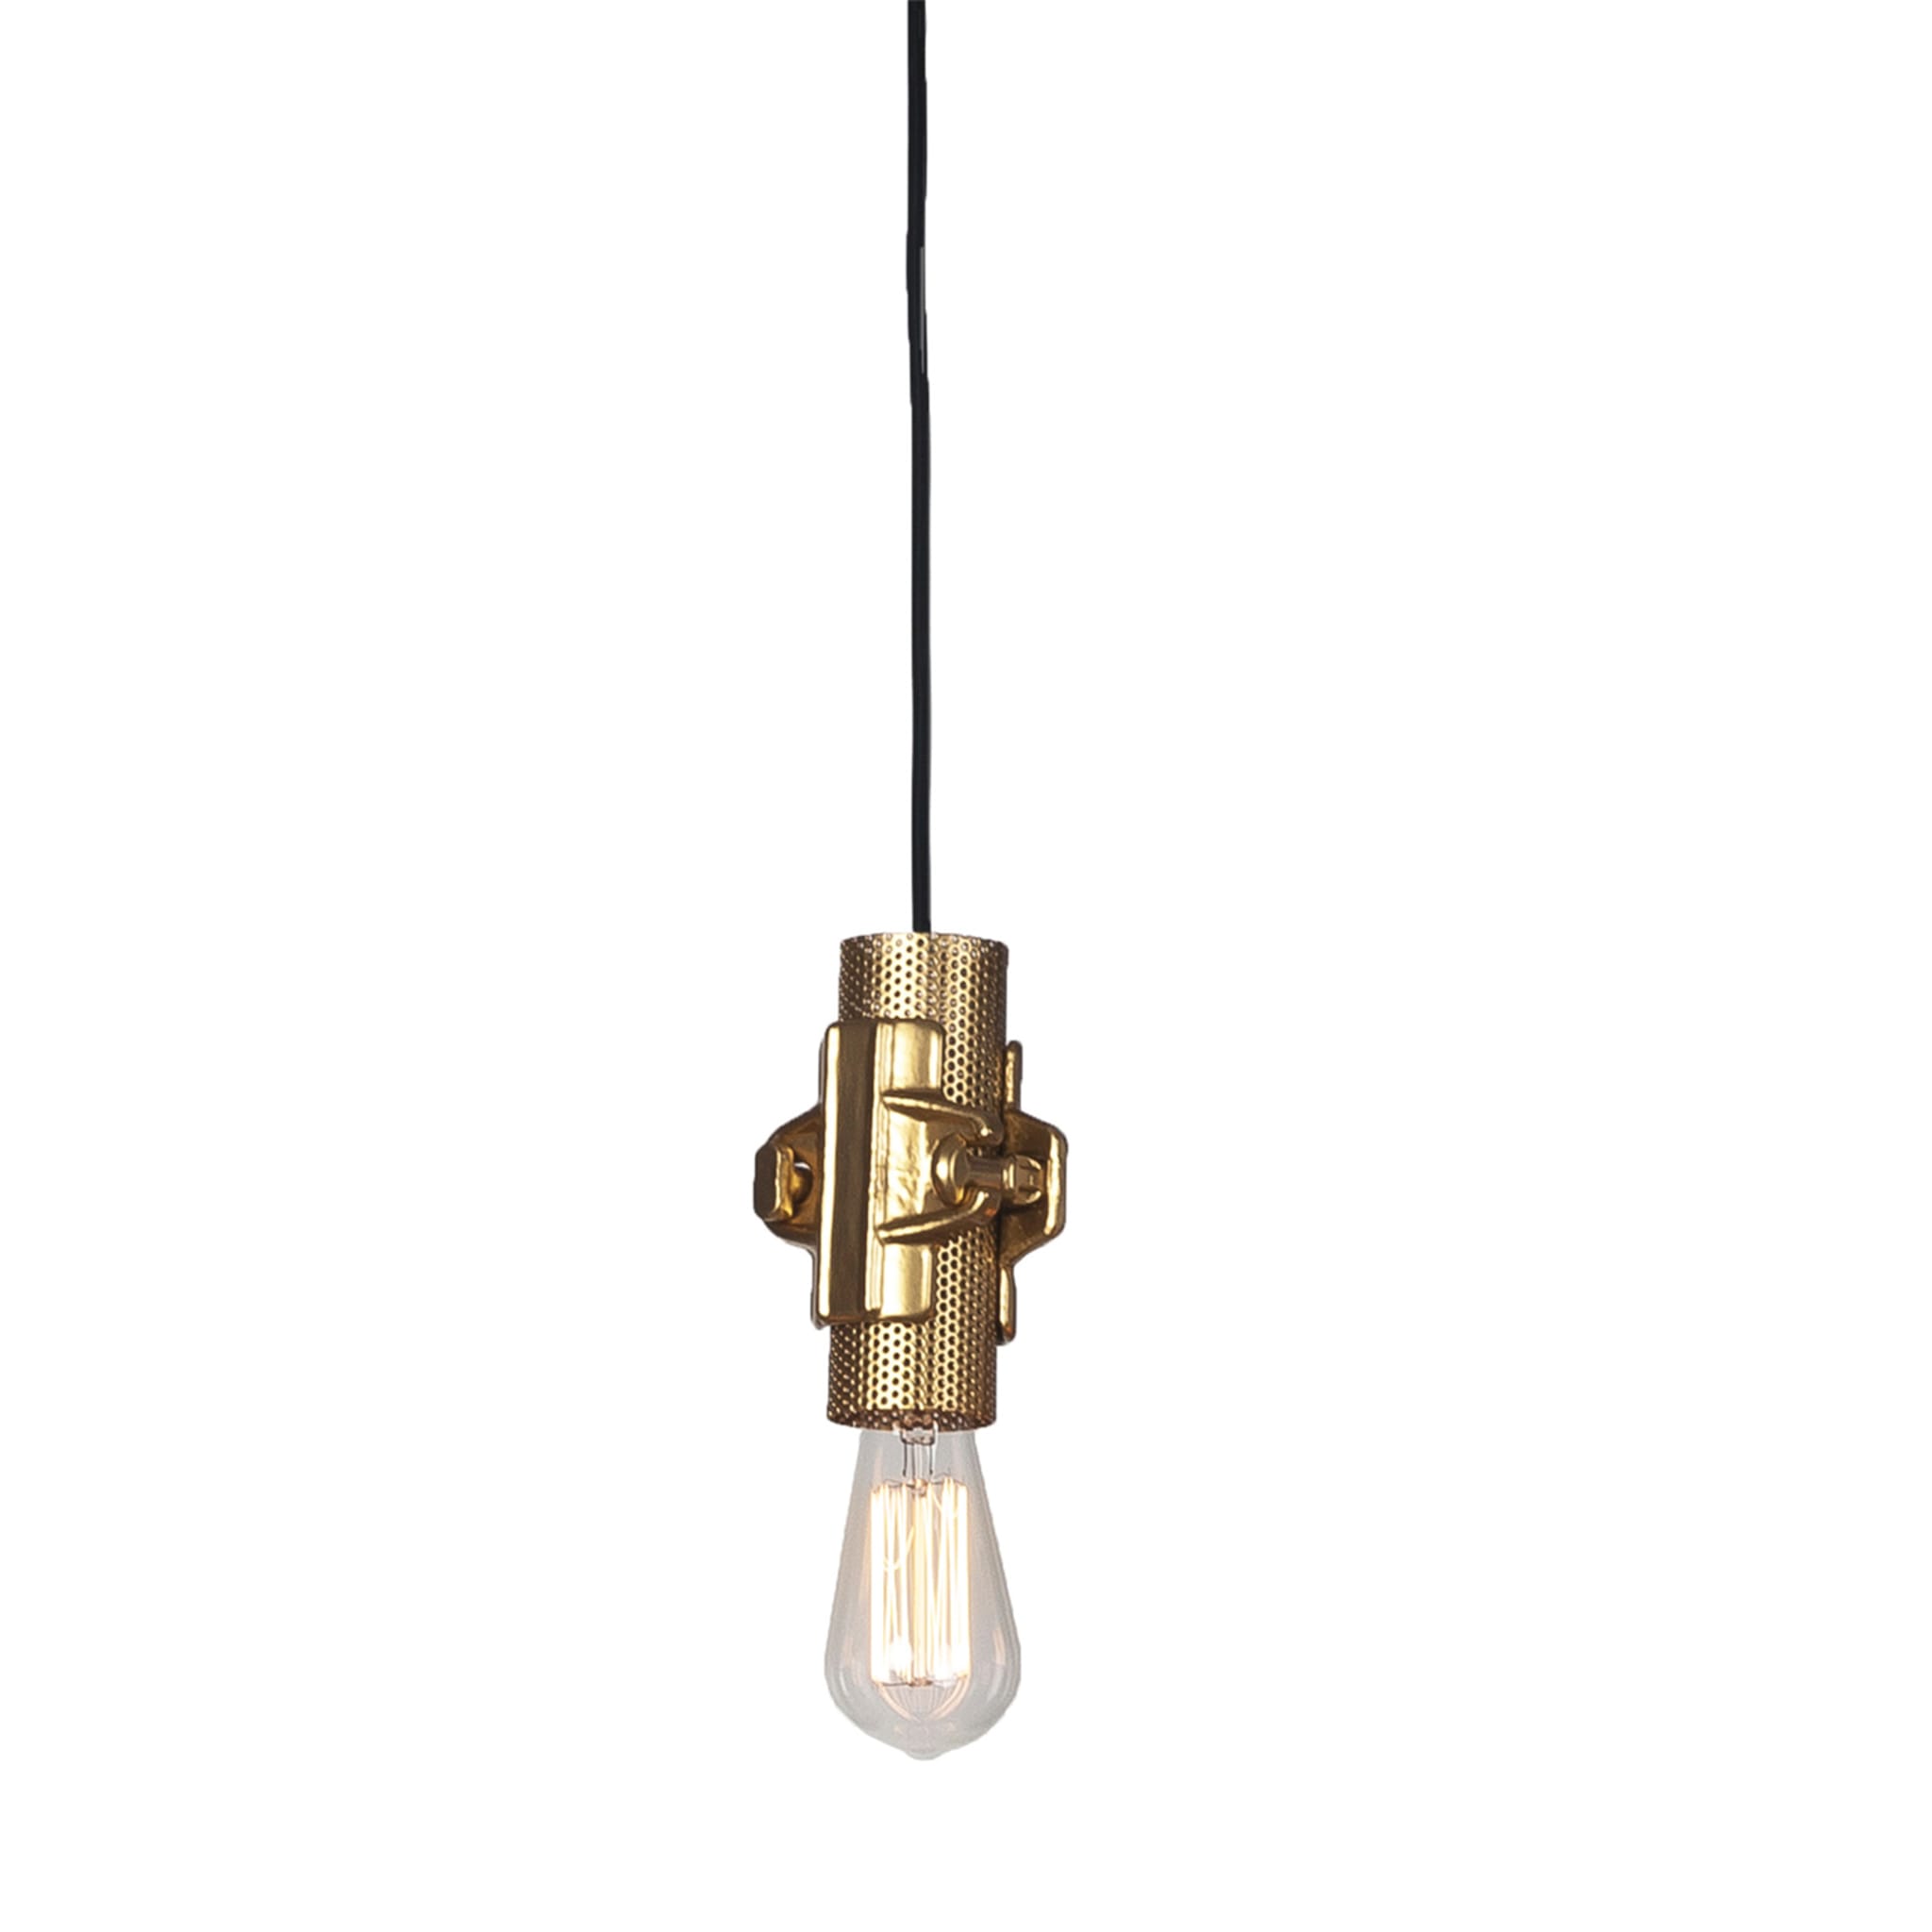 Nando S Gold Pendant Lamp by Luca De Bona & Dario De Meo - Main view